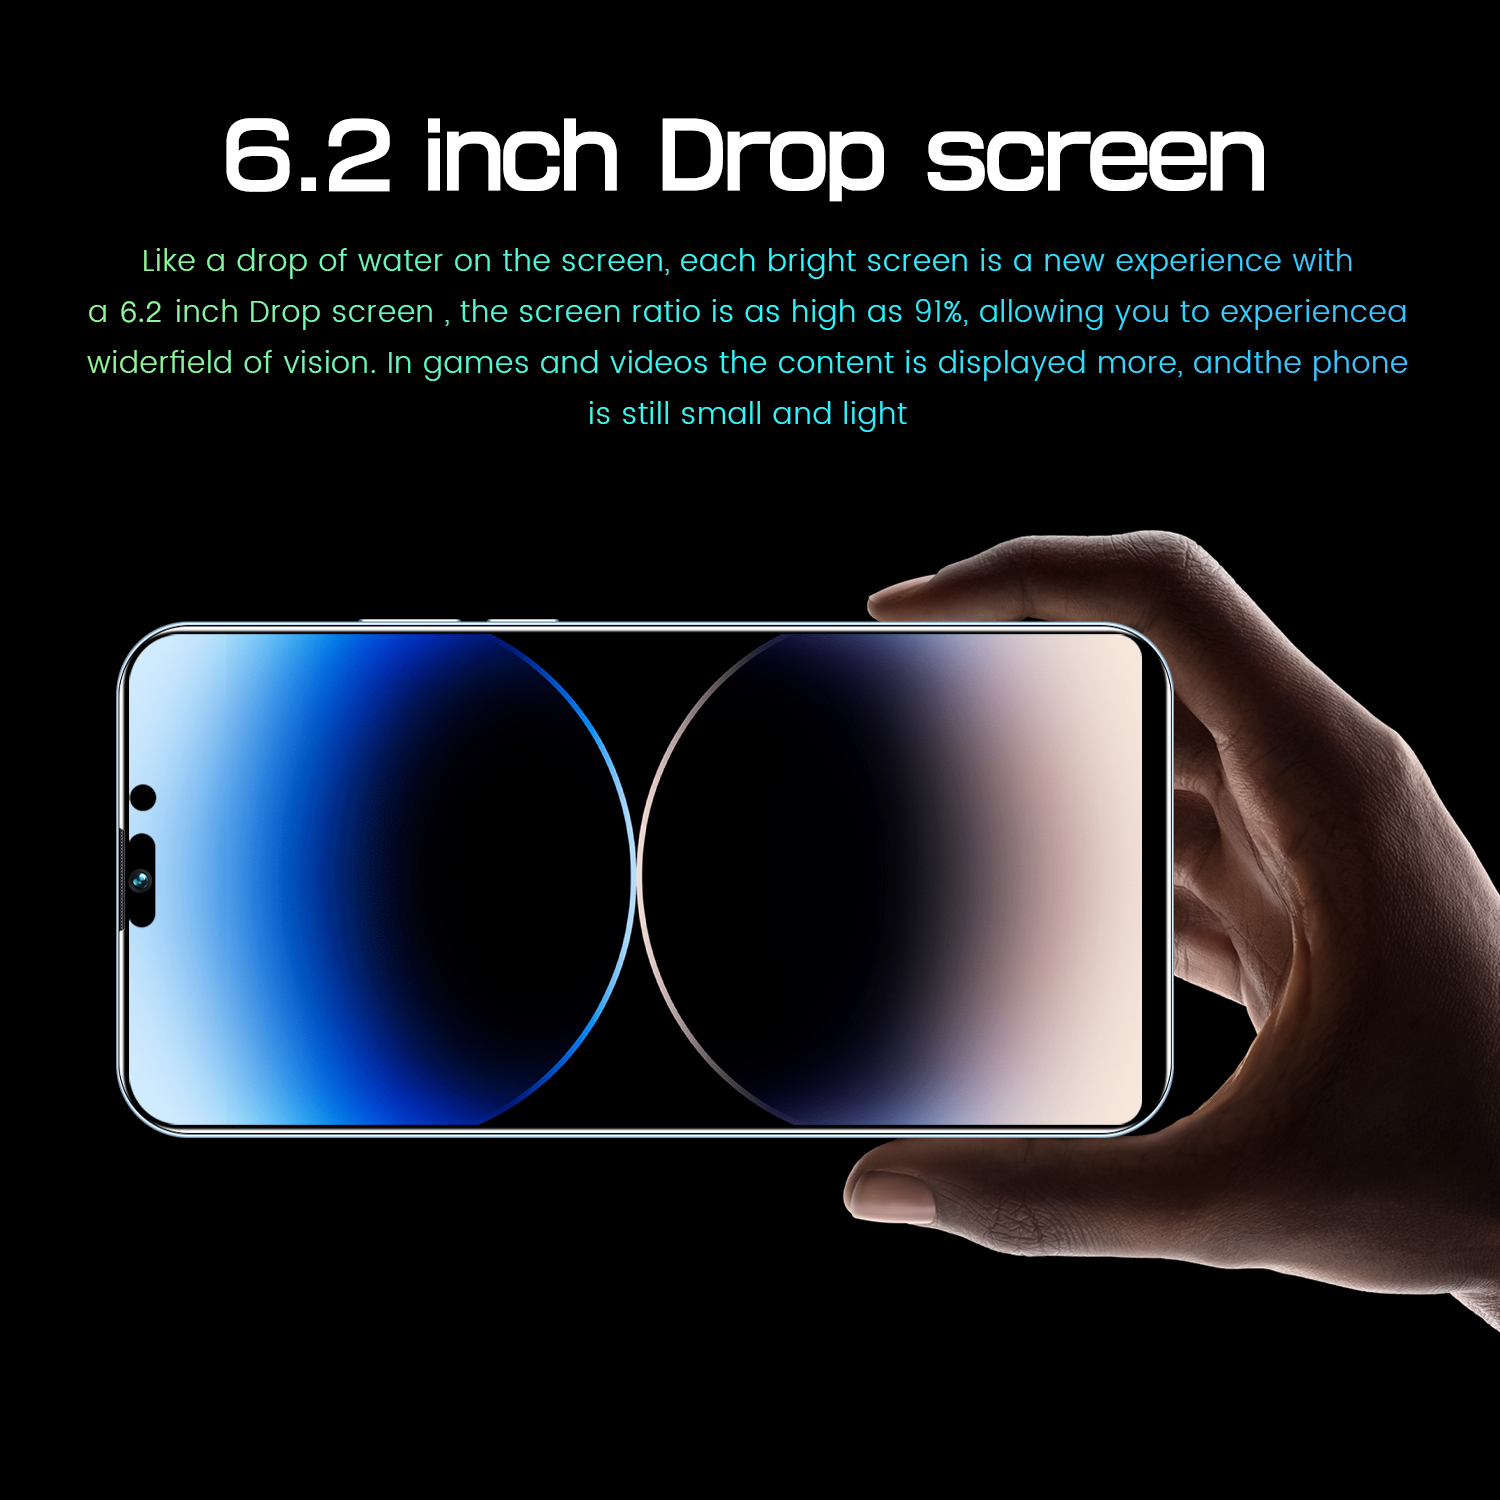 đt i14 Pro max di động giá rẻ Điện thoại di động chính hãng đặc biệt bán điện thoại mới  Full HD 6.2Inch  1+8GB  Hai Thẻ Sim Camera HD 3+5MP Pin 3000mAh giá rẻ - học trực tuyến tốt - chơi game mượt，shopdunk official store